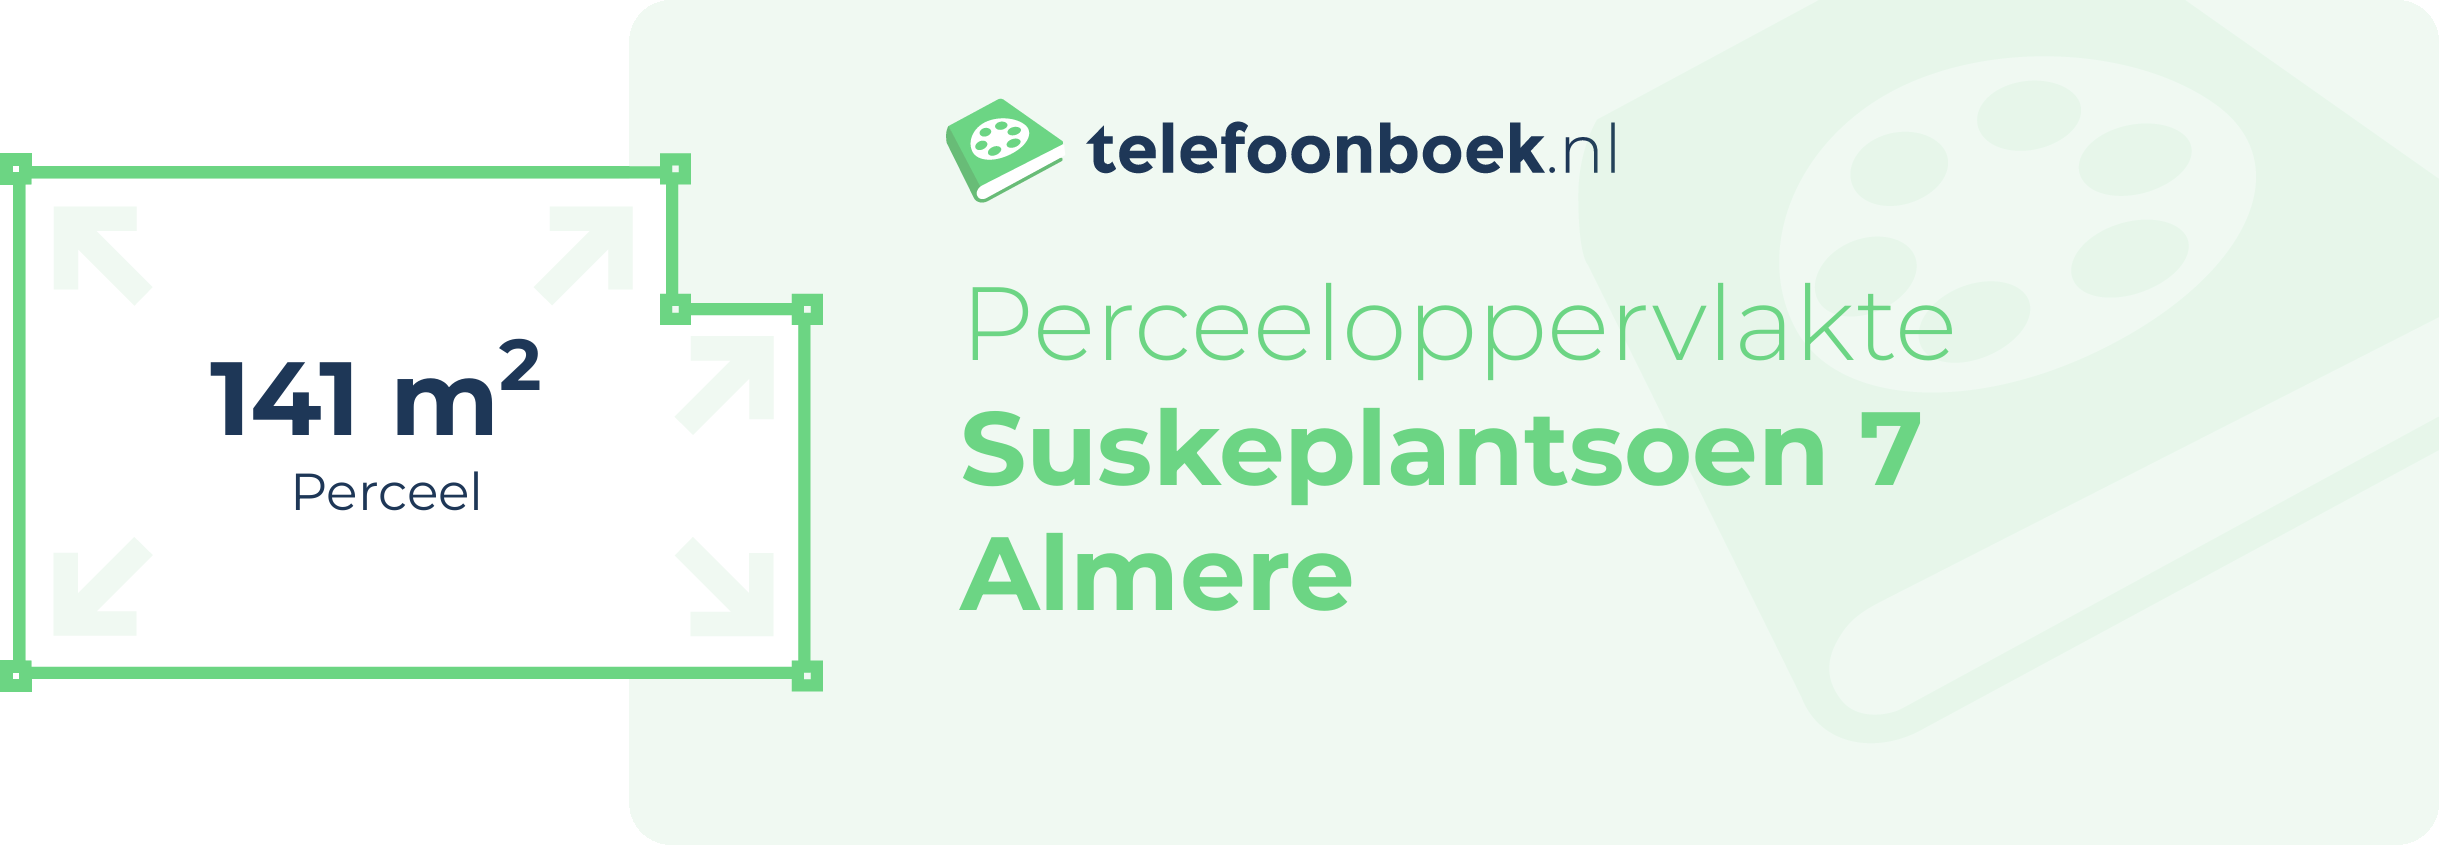 Perceeloppervlakte Suskeplantsoen 7 Almere